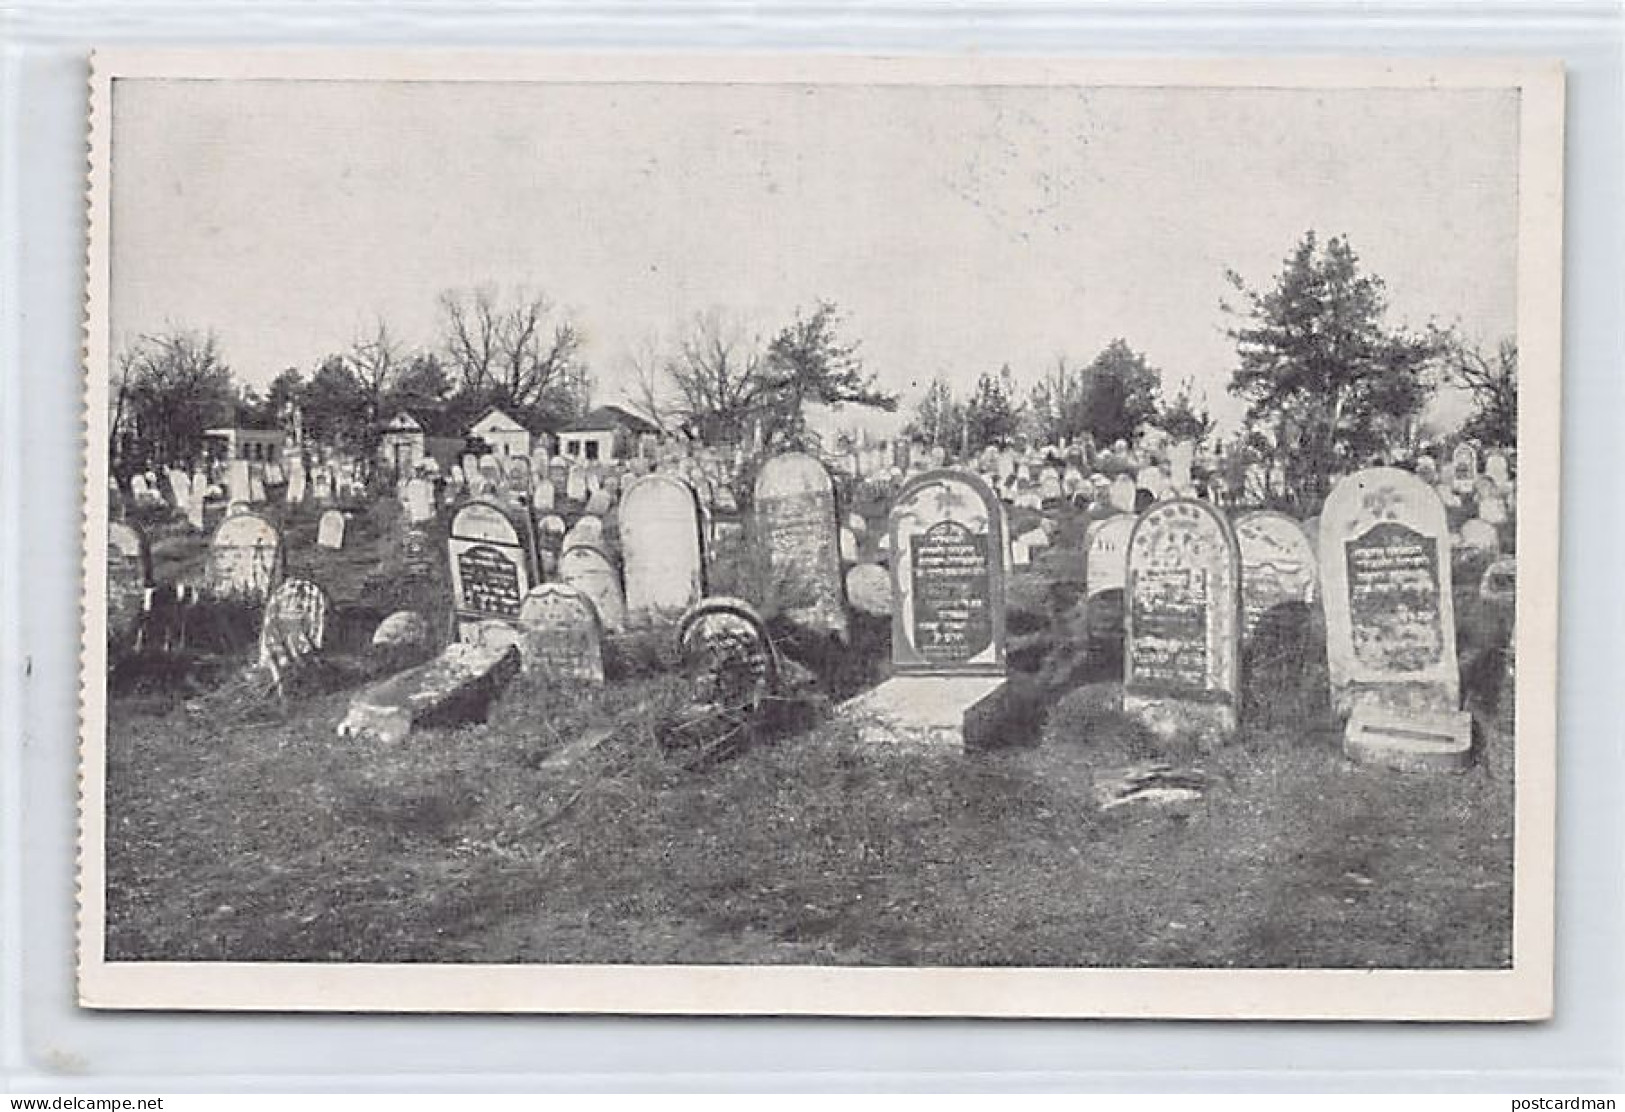 JUDAICA - Belarus - BREST - The Jewish Cemetery (c. World War One) - Publ. Krey & Sommerlad 4 - Judaisme